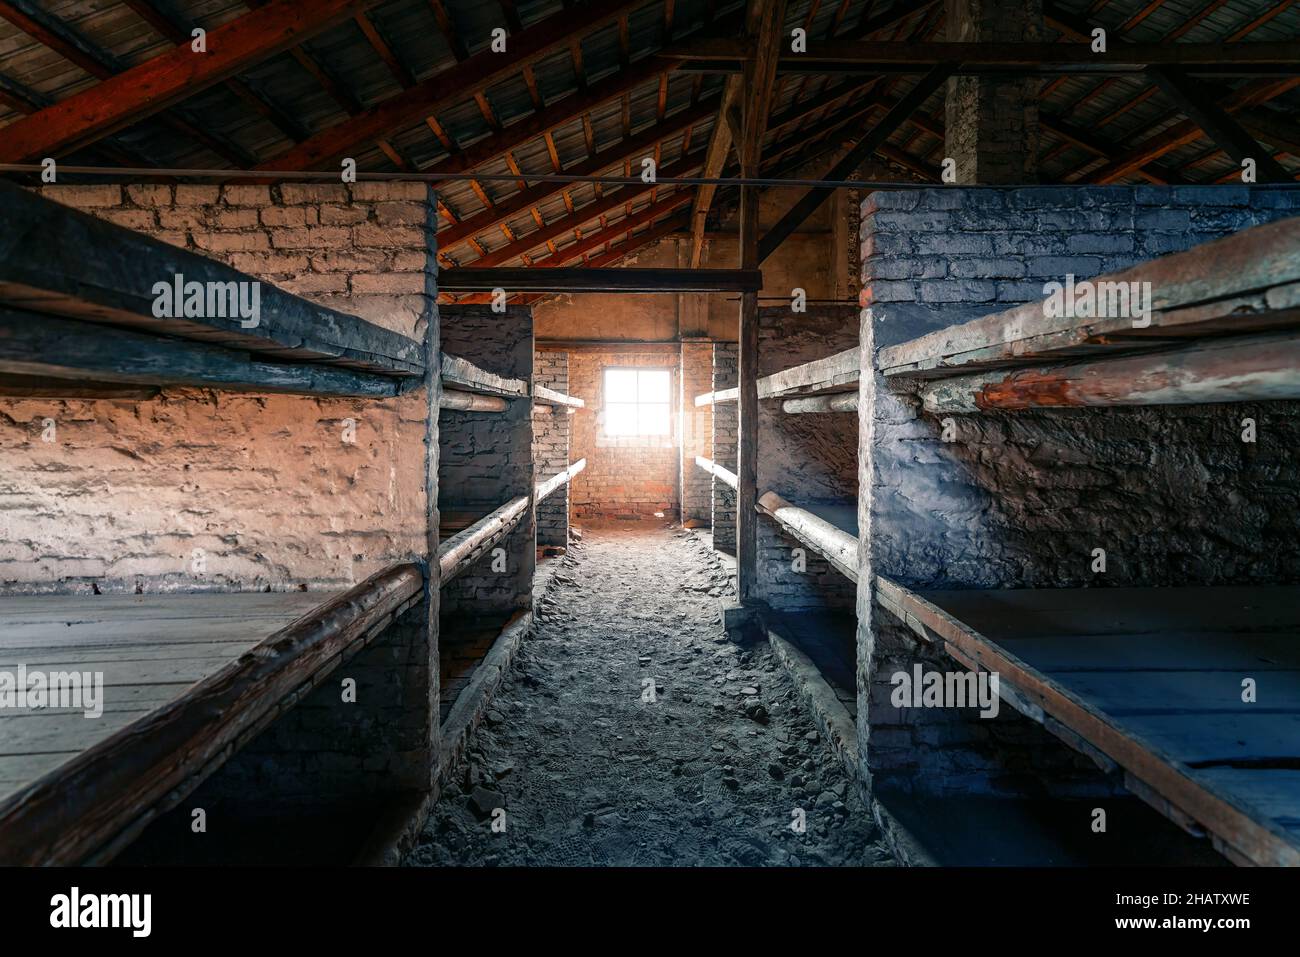 Häftlingskasernen in Auschwitz II - Birkenau, ehemaliges deutsches Konzentrations- und Vernichtungslager der Nazis - Polen Stockfoto